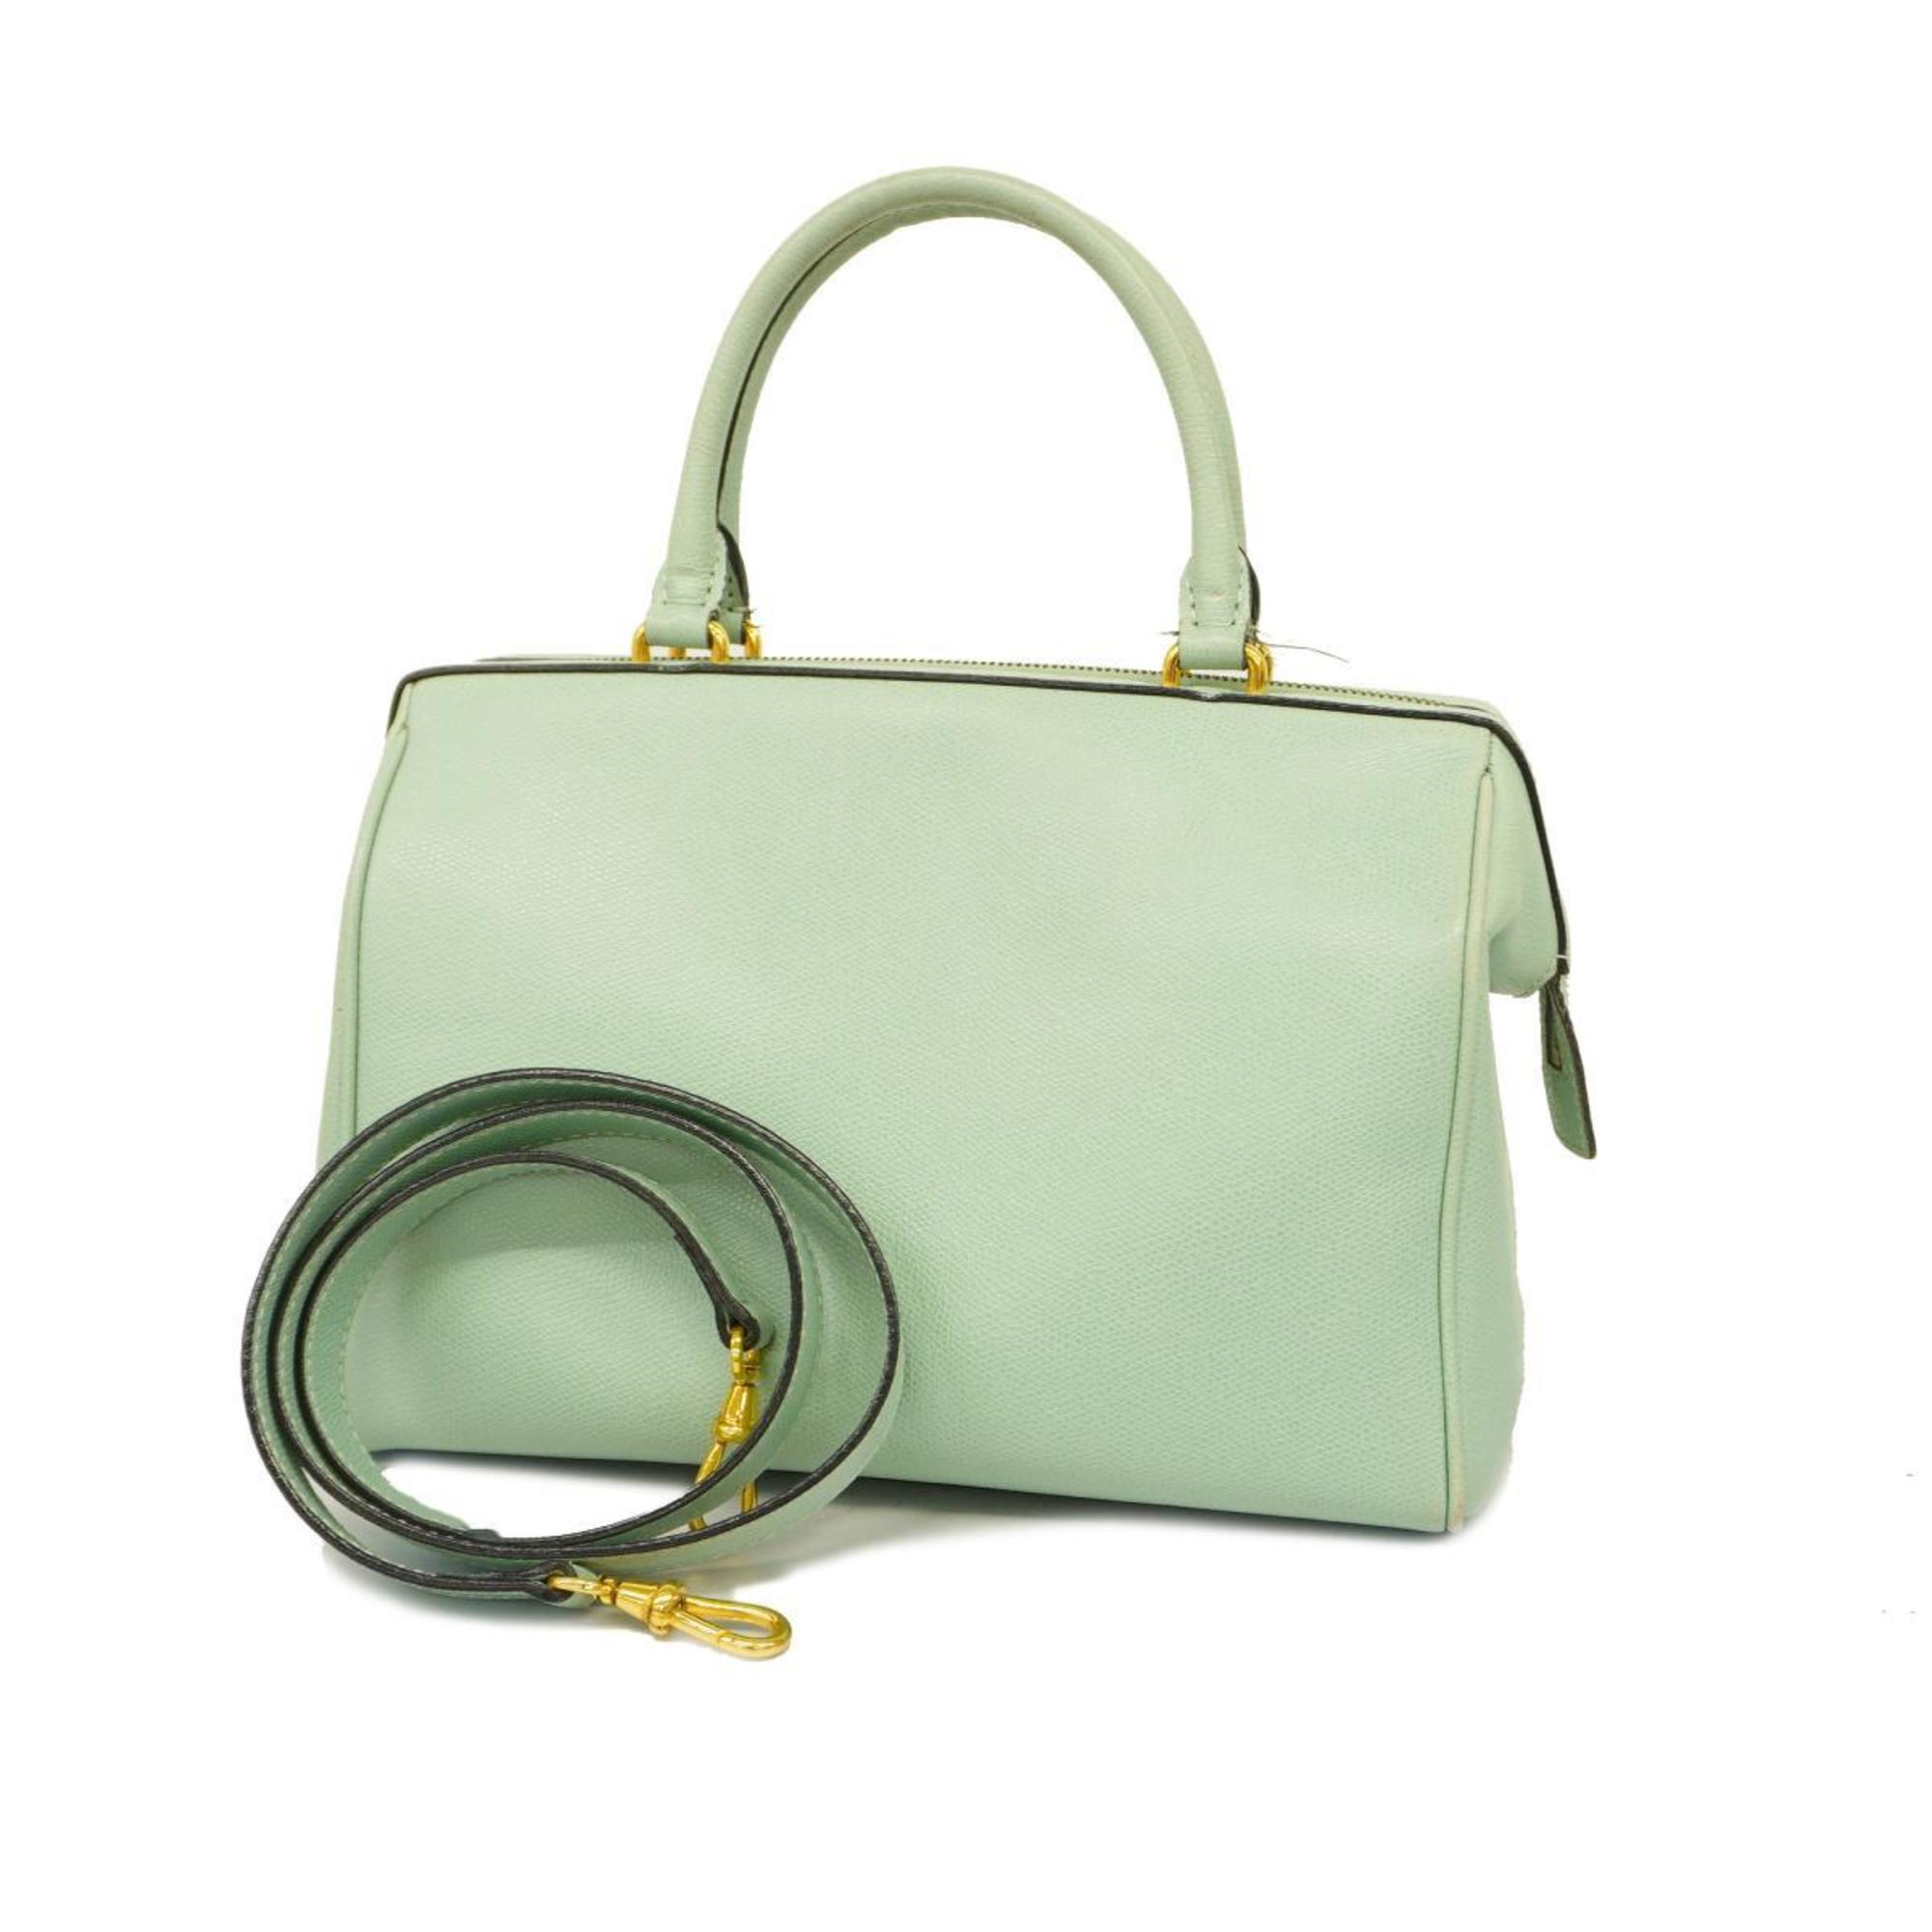 Celine handbag leather light green ladies